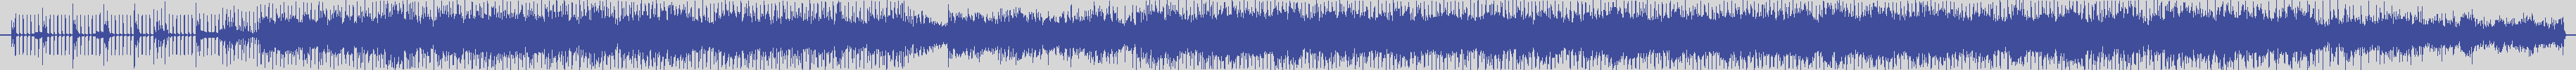 upr [UPR019] Adan, Ilse - Sun King [Original Mix] audio wave form